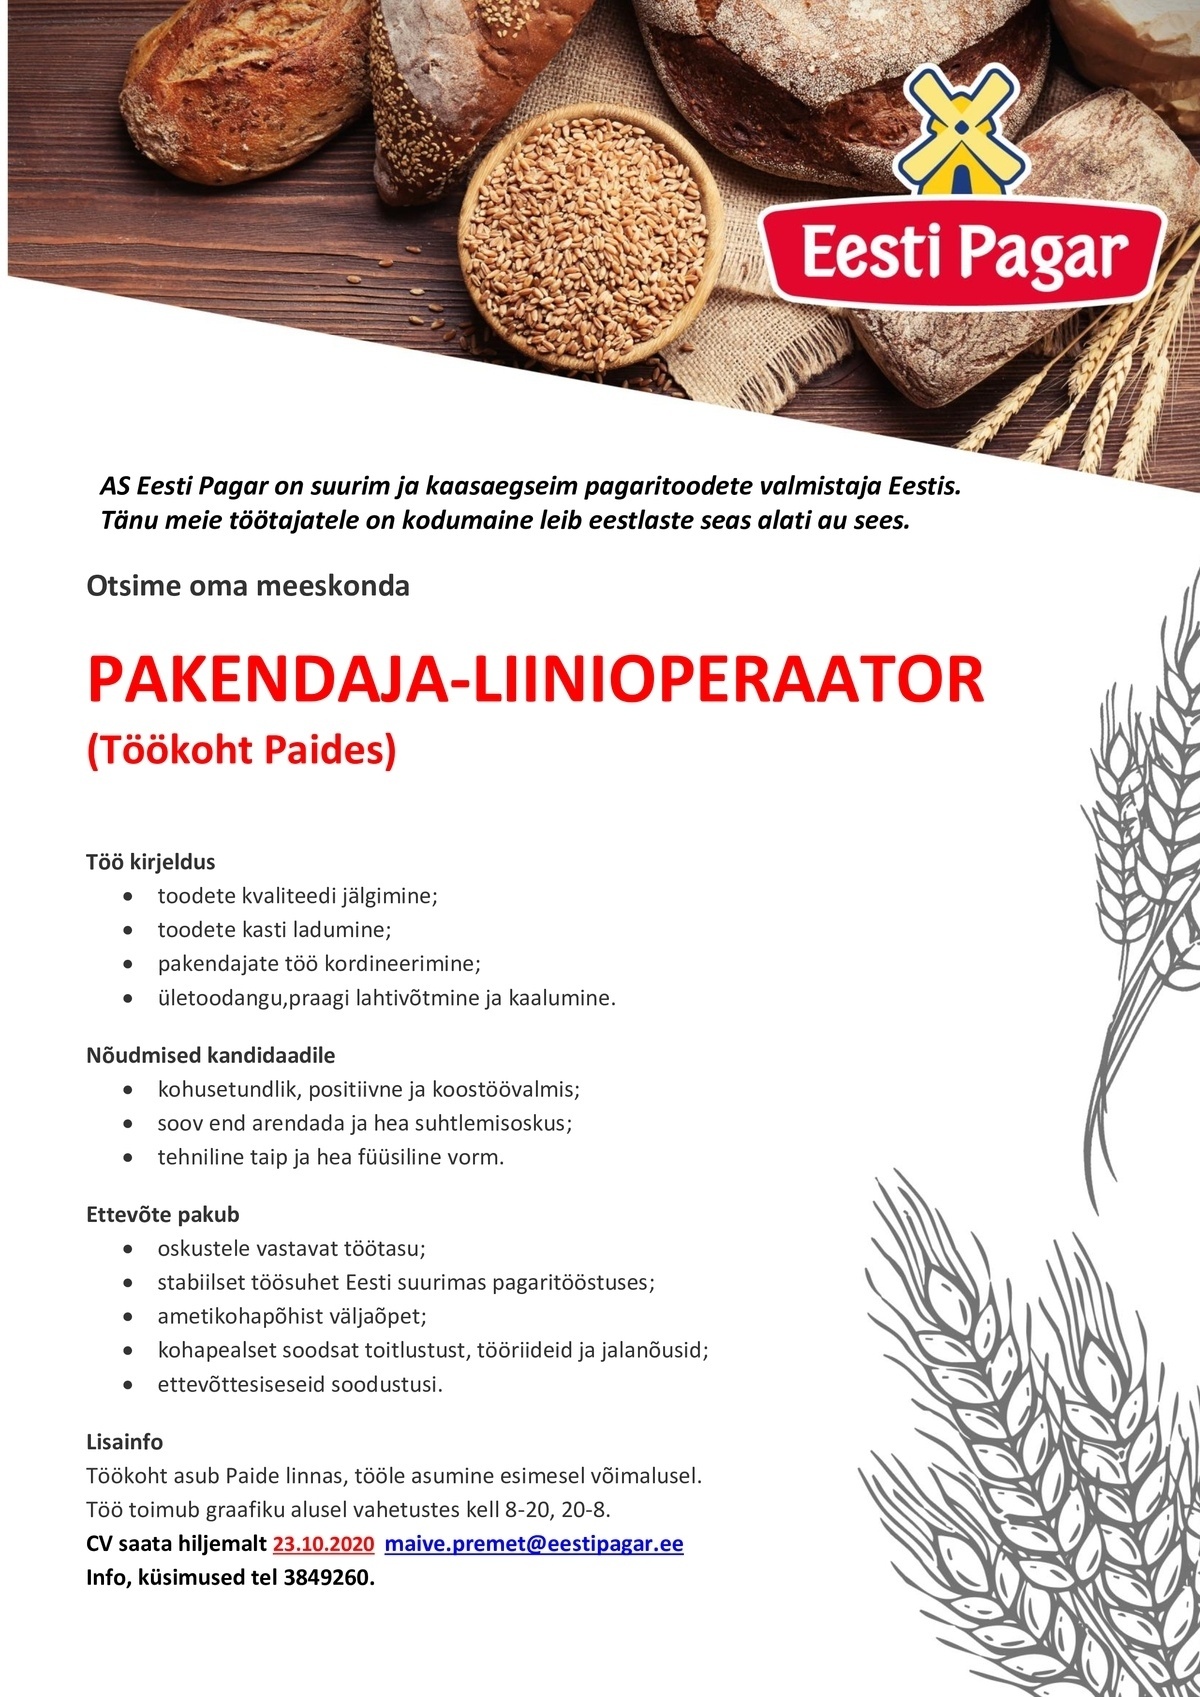 Eesti Pagar AS Pakendaja-liinioperaator (Paide linnas)